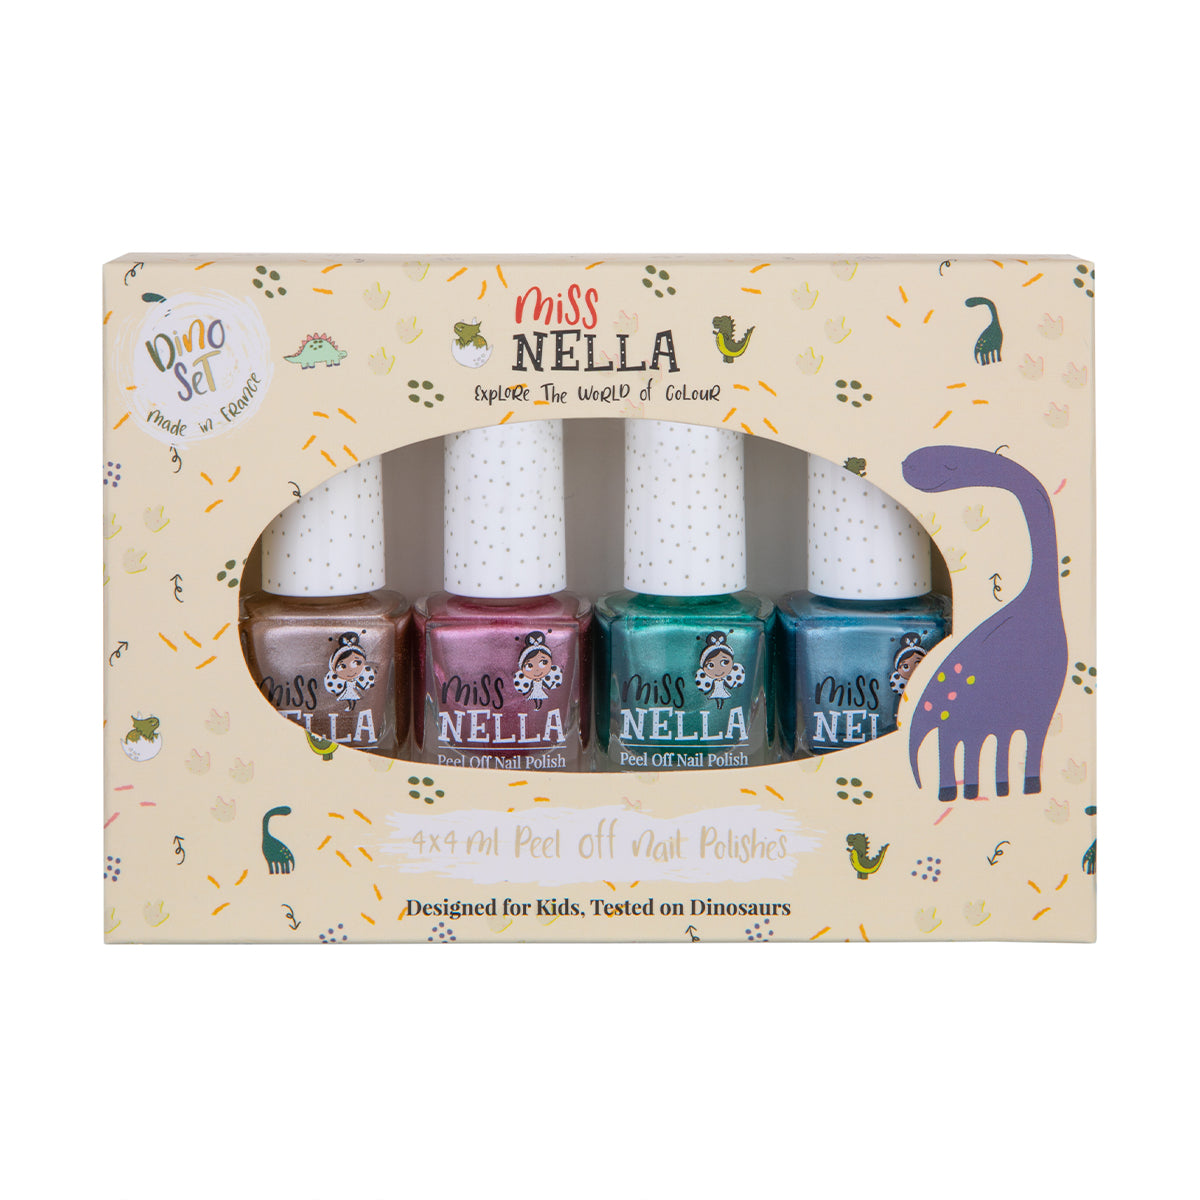 Laat de nageltjes van jouw kindje shinen met de nagellak dino 4-pack van het merk Miss Nella. De peel off nagellak is speciaal ontworpen voor kinderen en is vrij van chemicaliën. Kleuren: roze, blauw, groen en bruin. VanZus